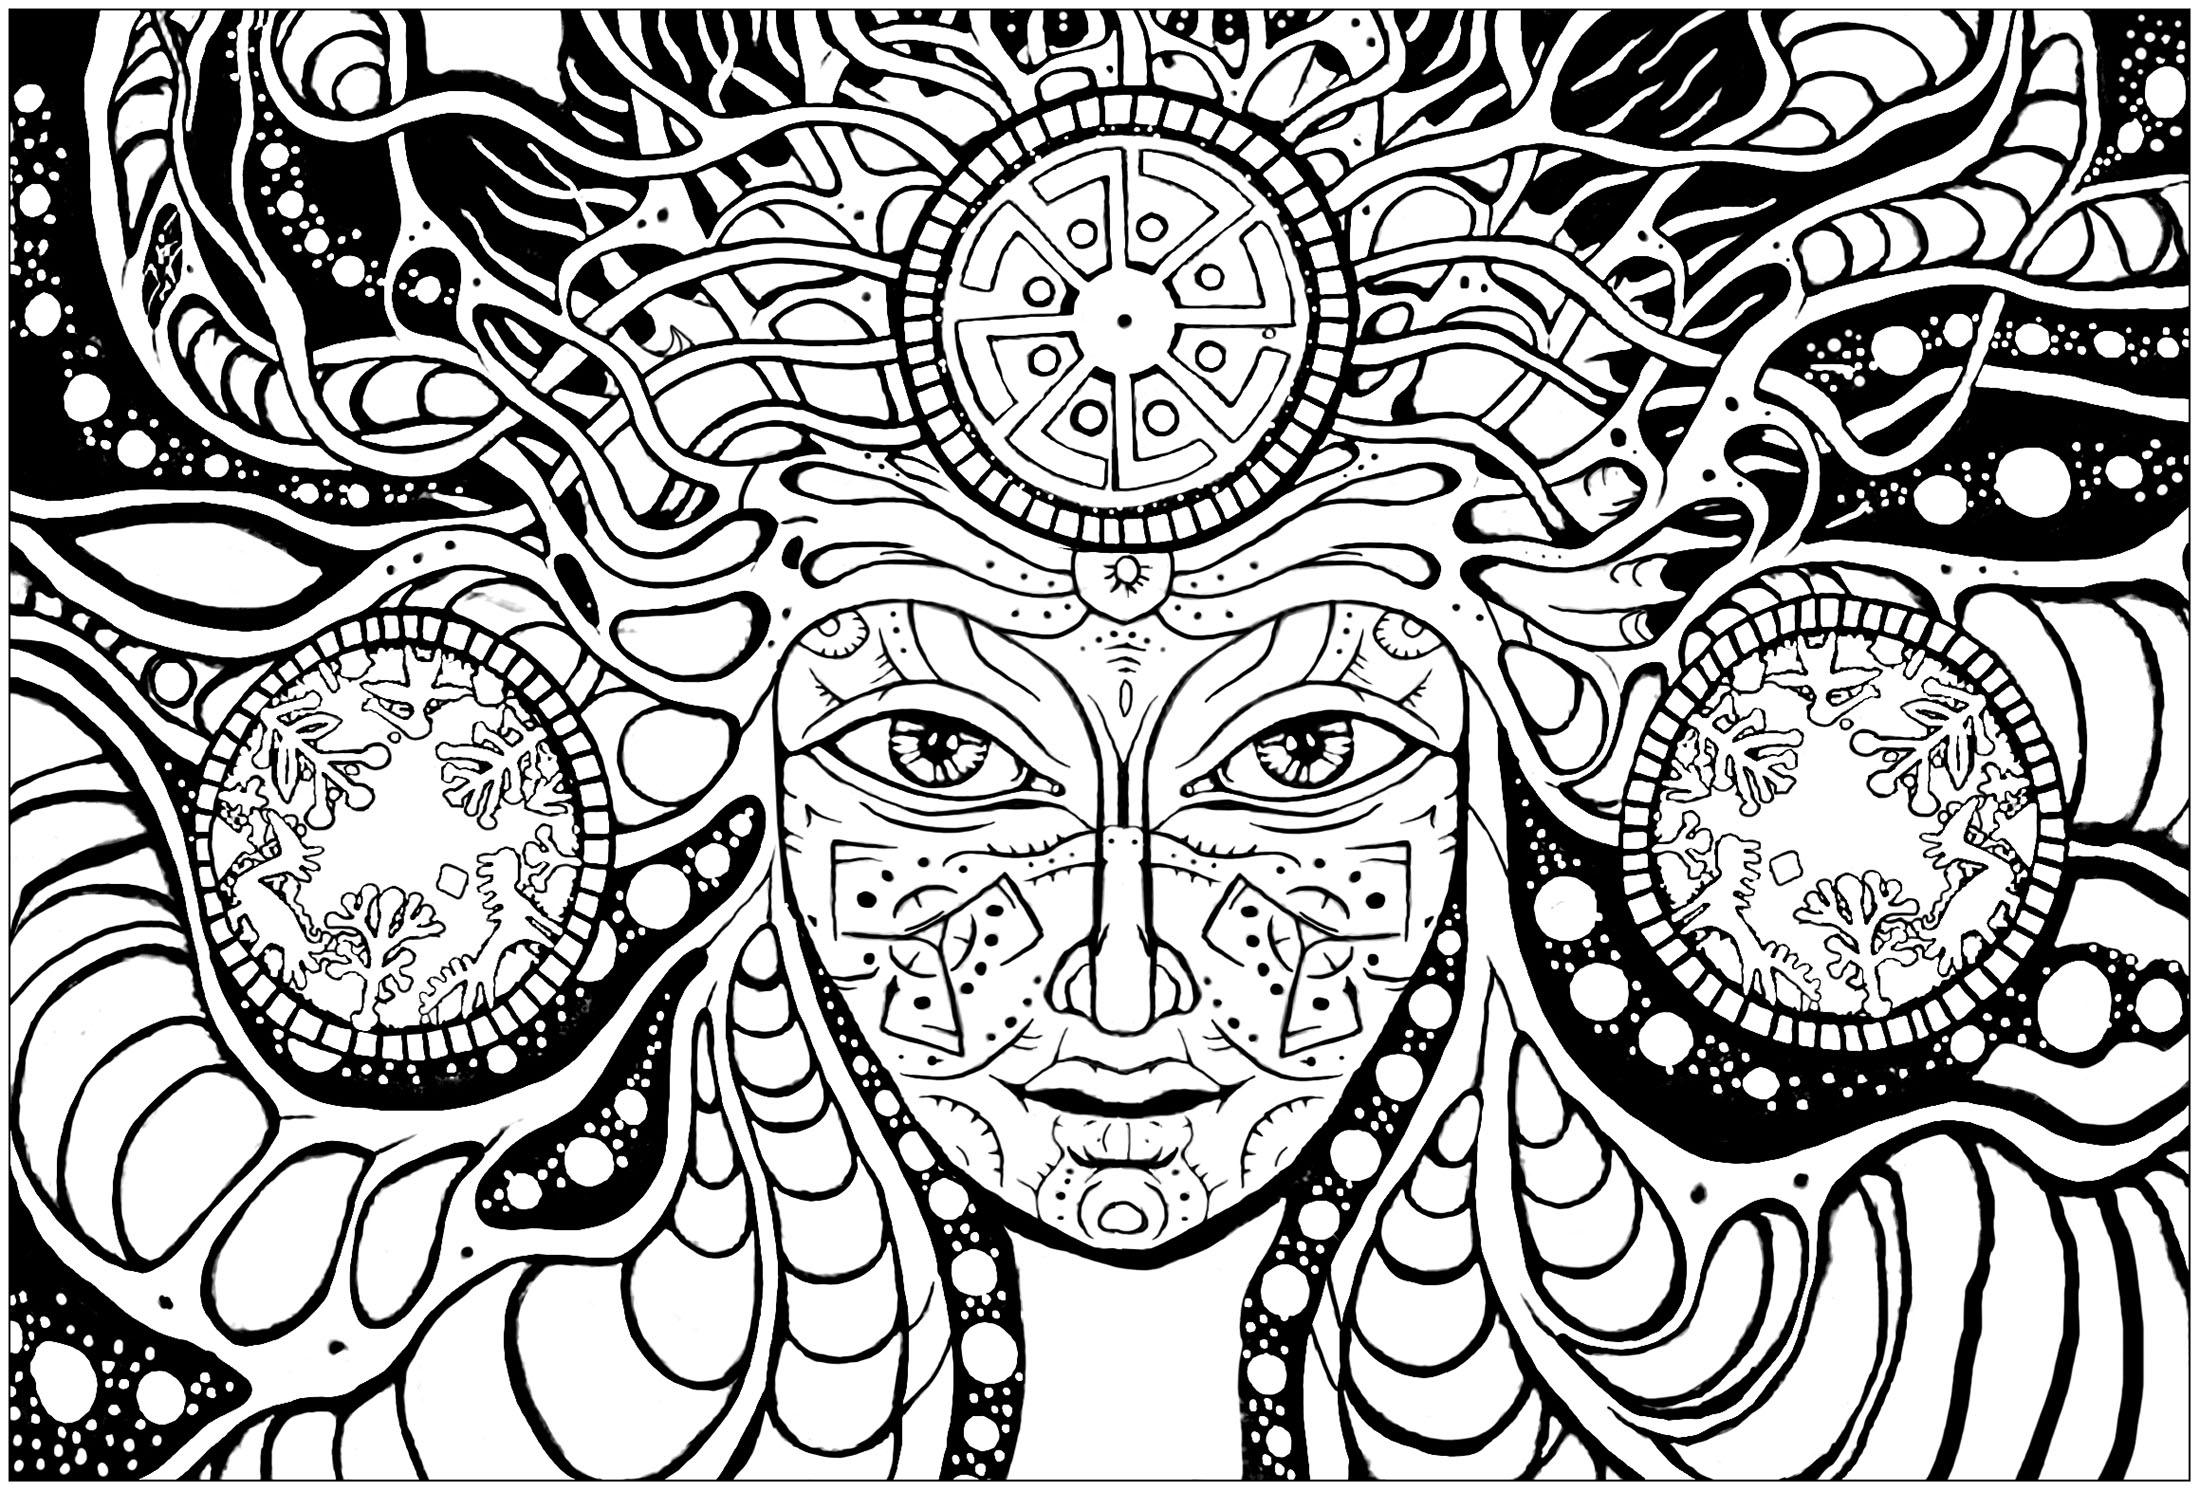 Mujer psicodélica: colorea su rostro hechizante y los extraños dibujos que la rodean